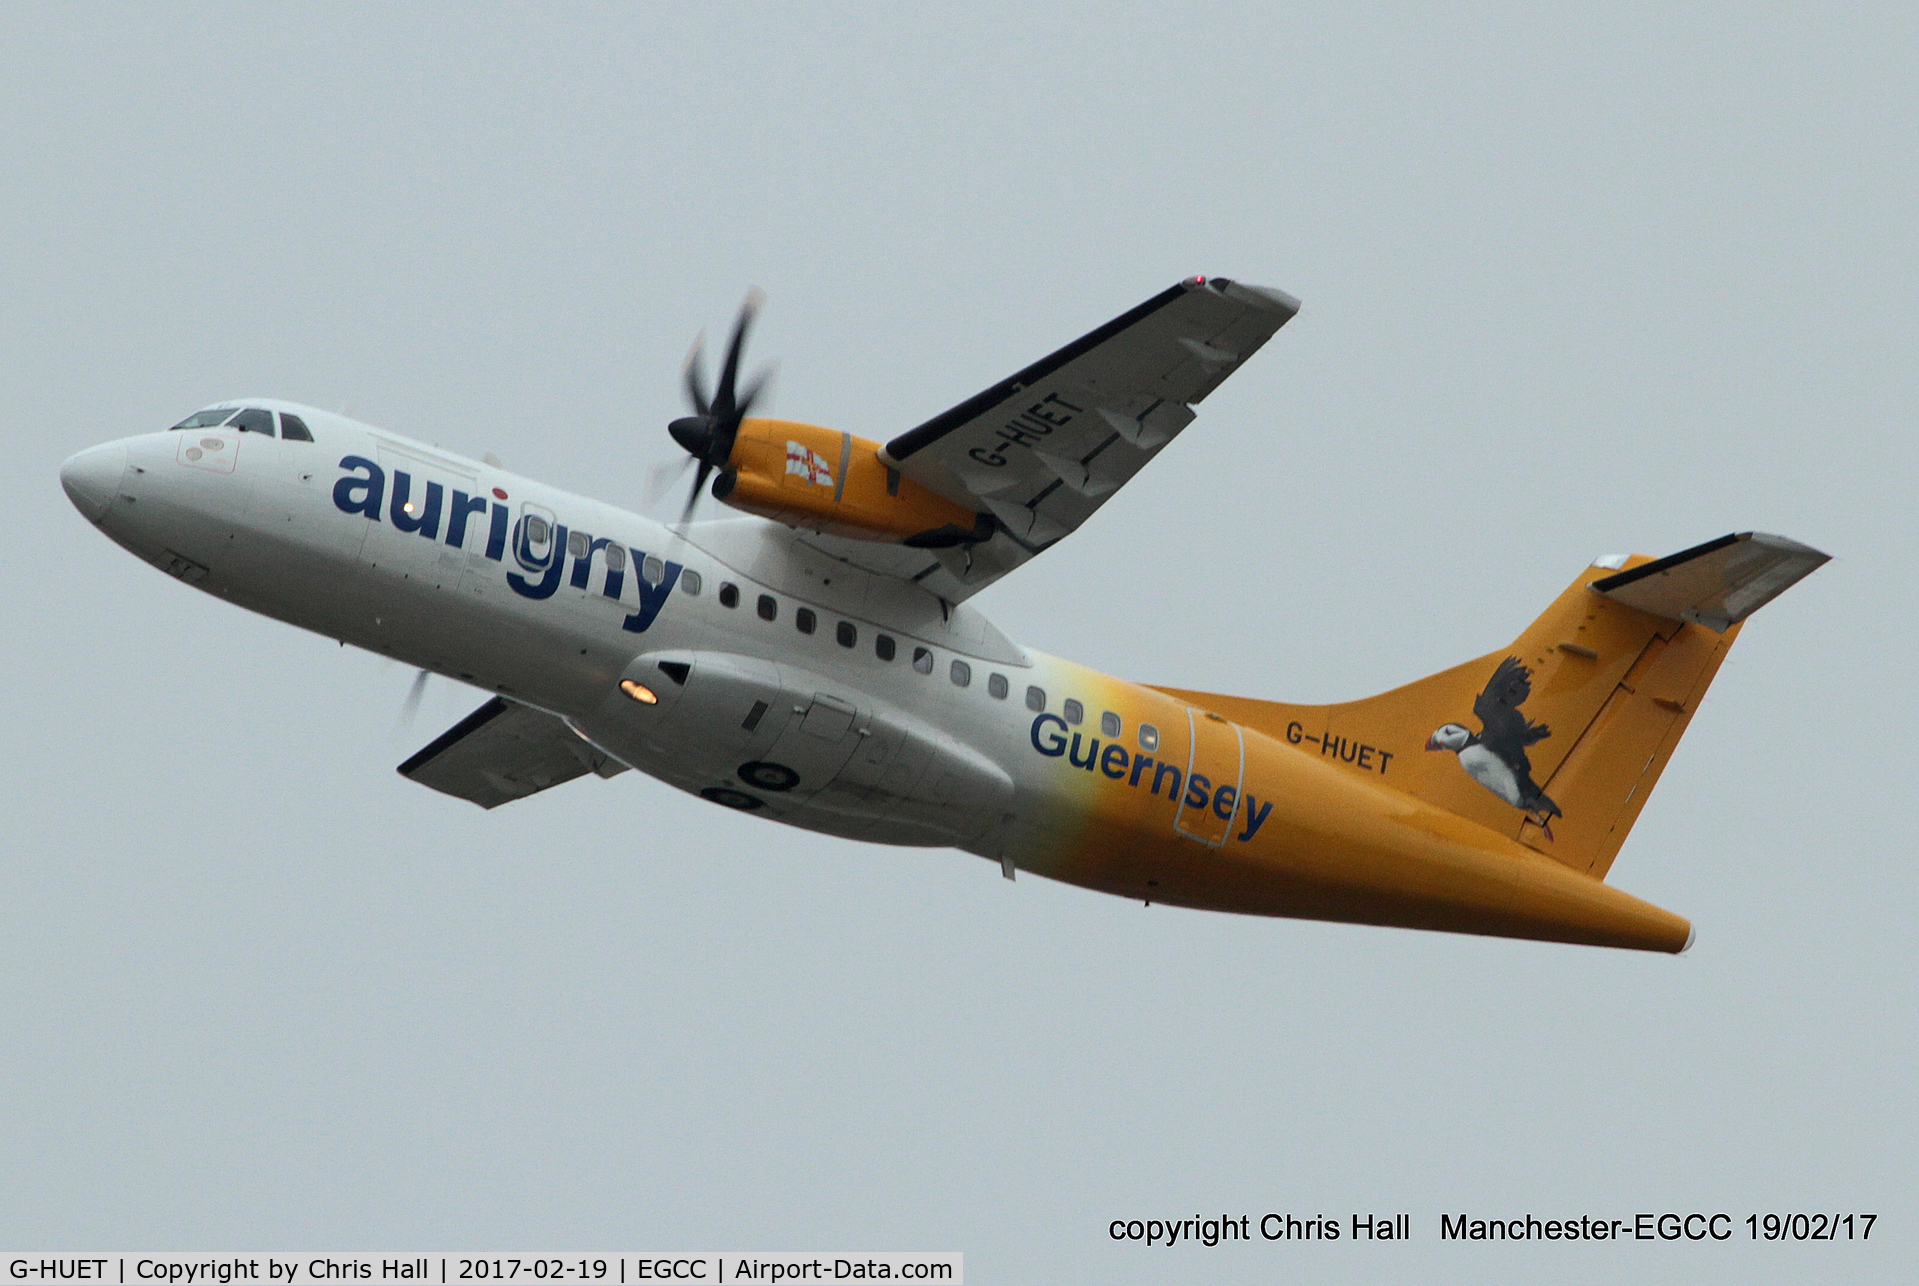 G-HUET, 1999 ATR 42-500 C/N 584, Aurigny Air Services